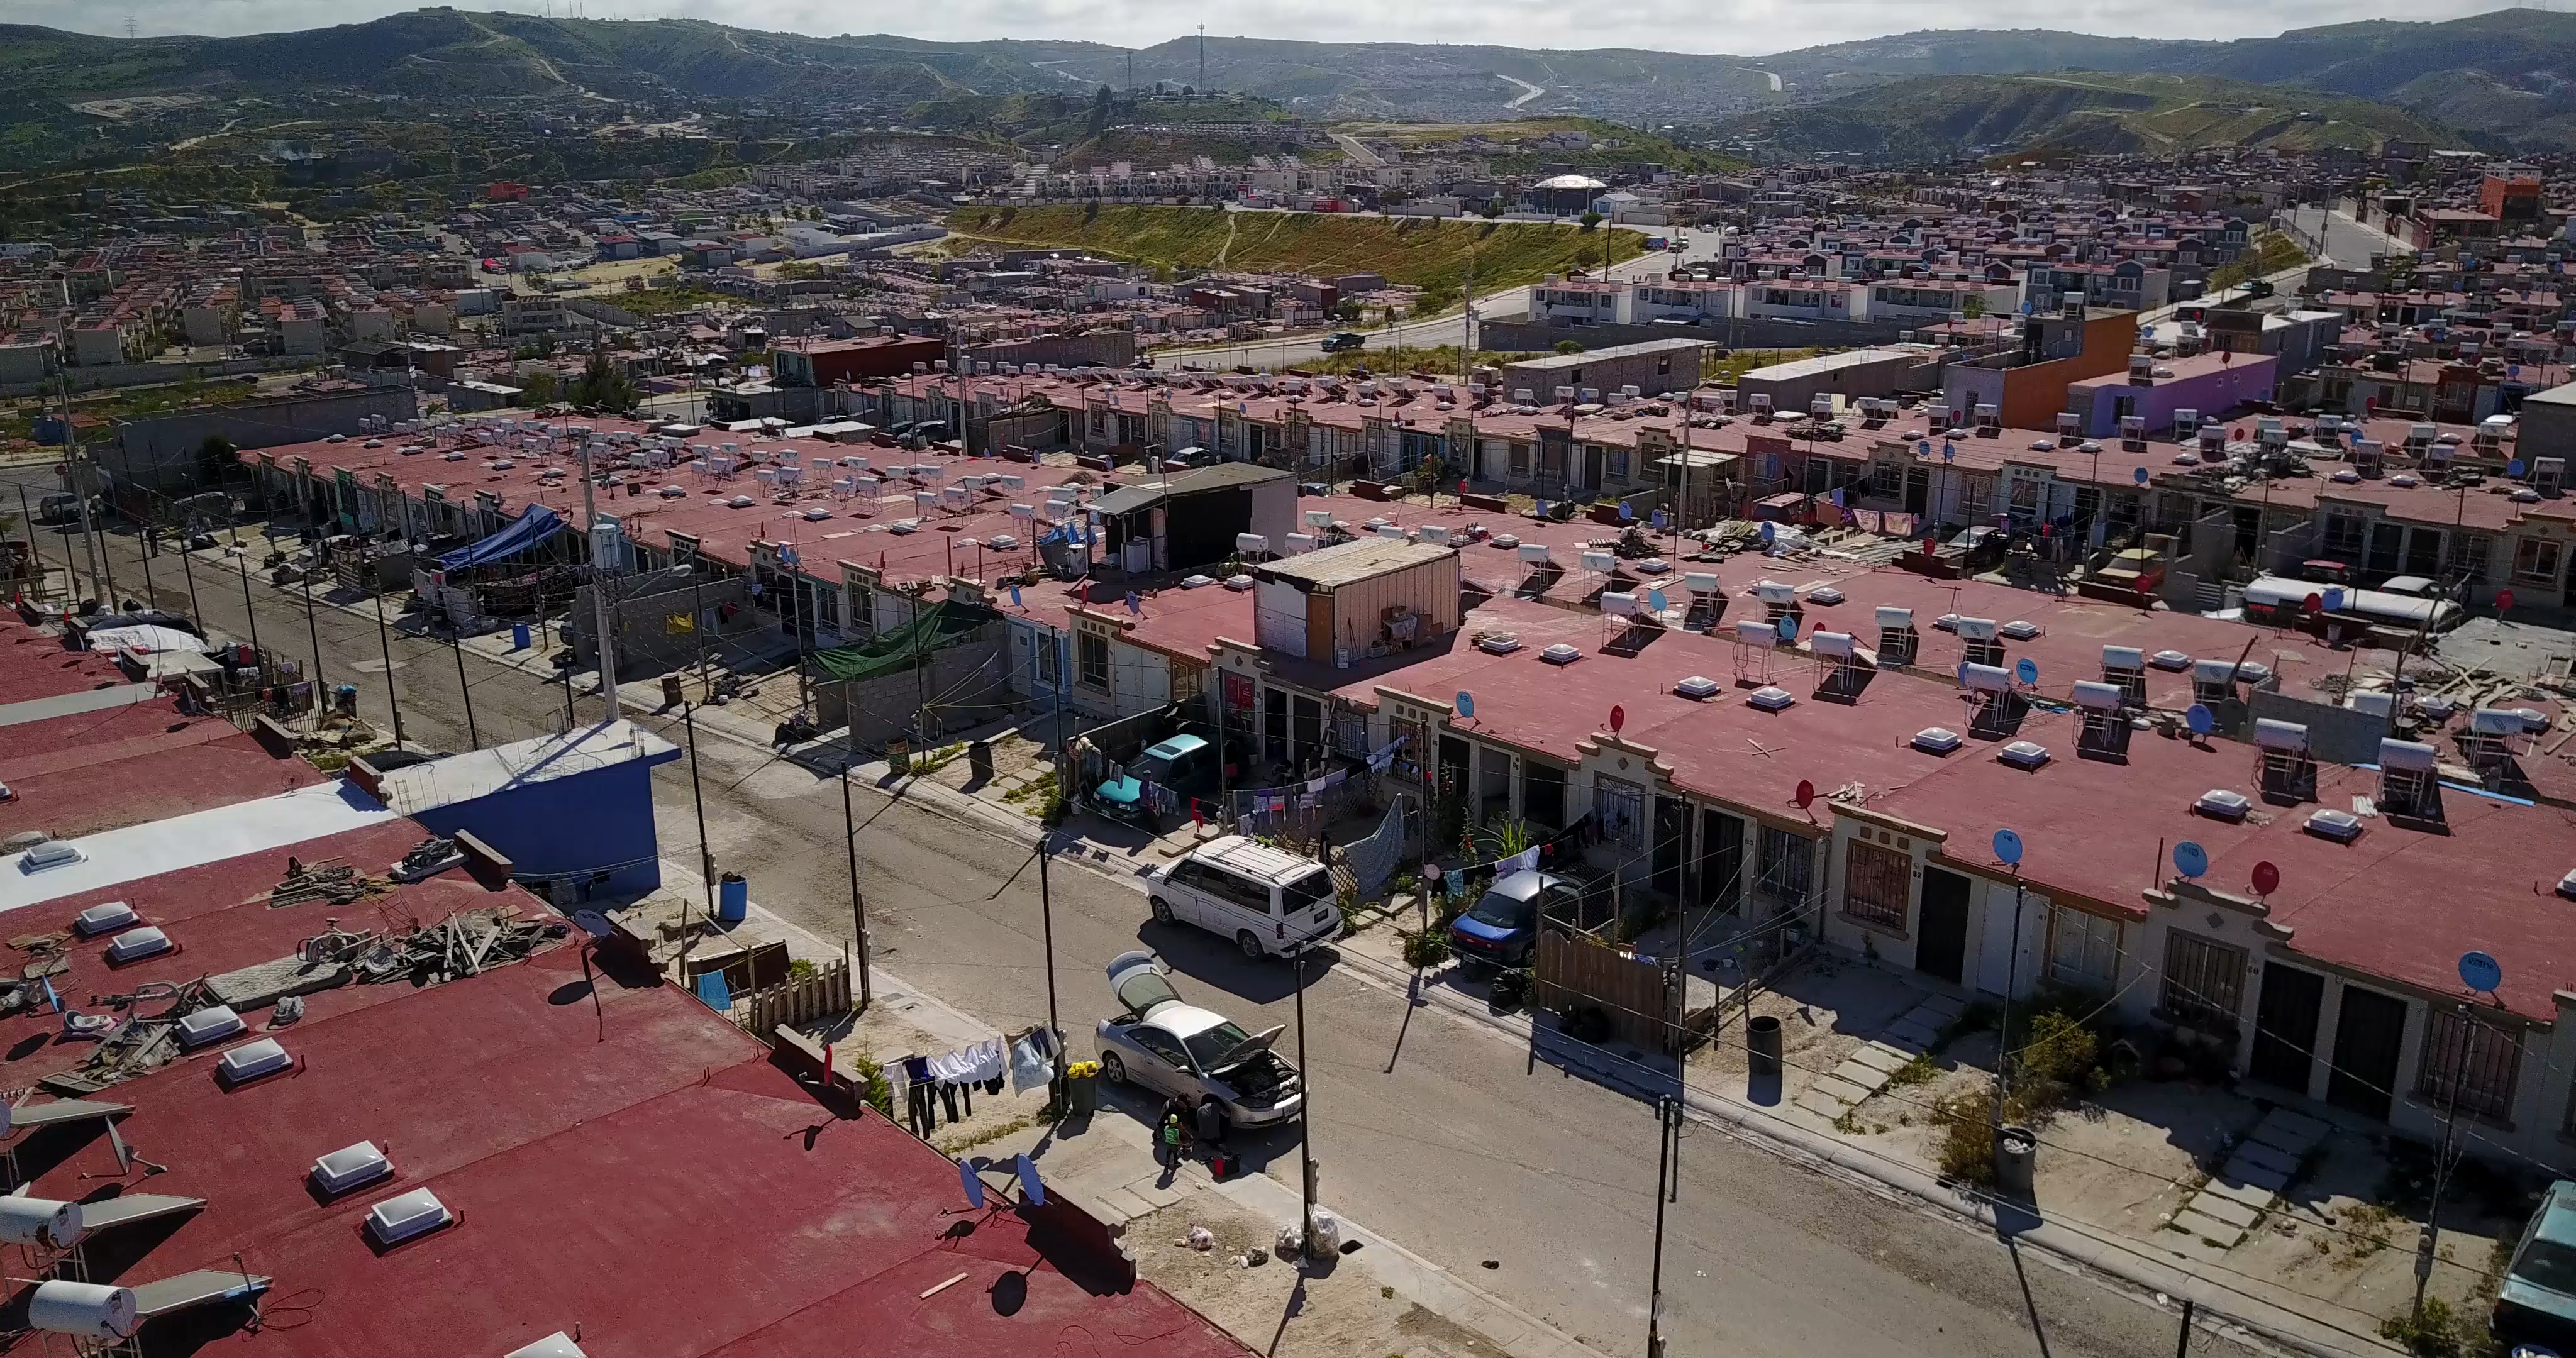 Una visión fallida - Mexico's Housing Debacle - Los Angeles Times